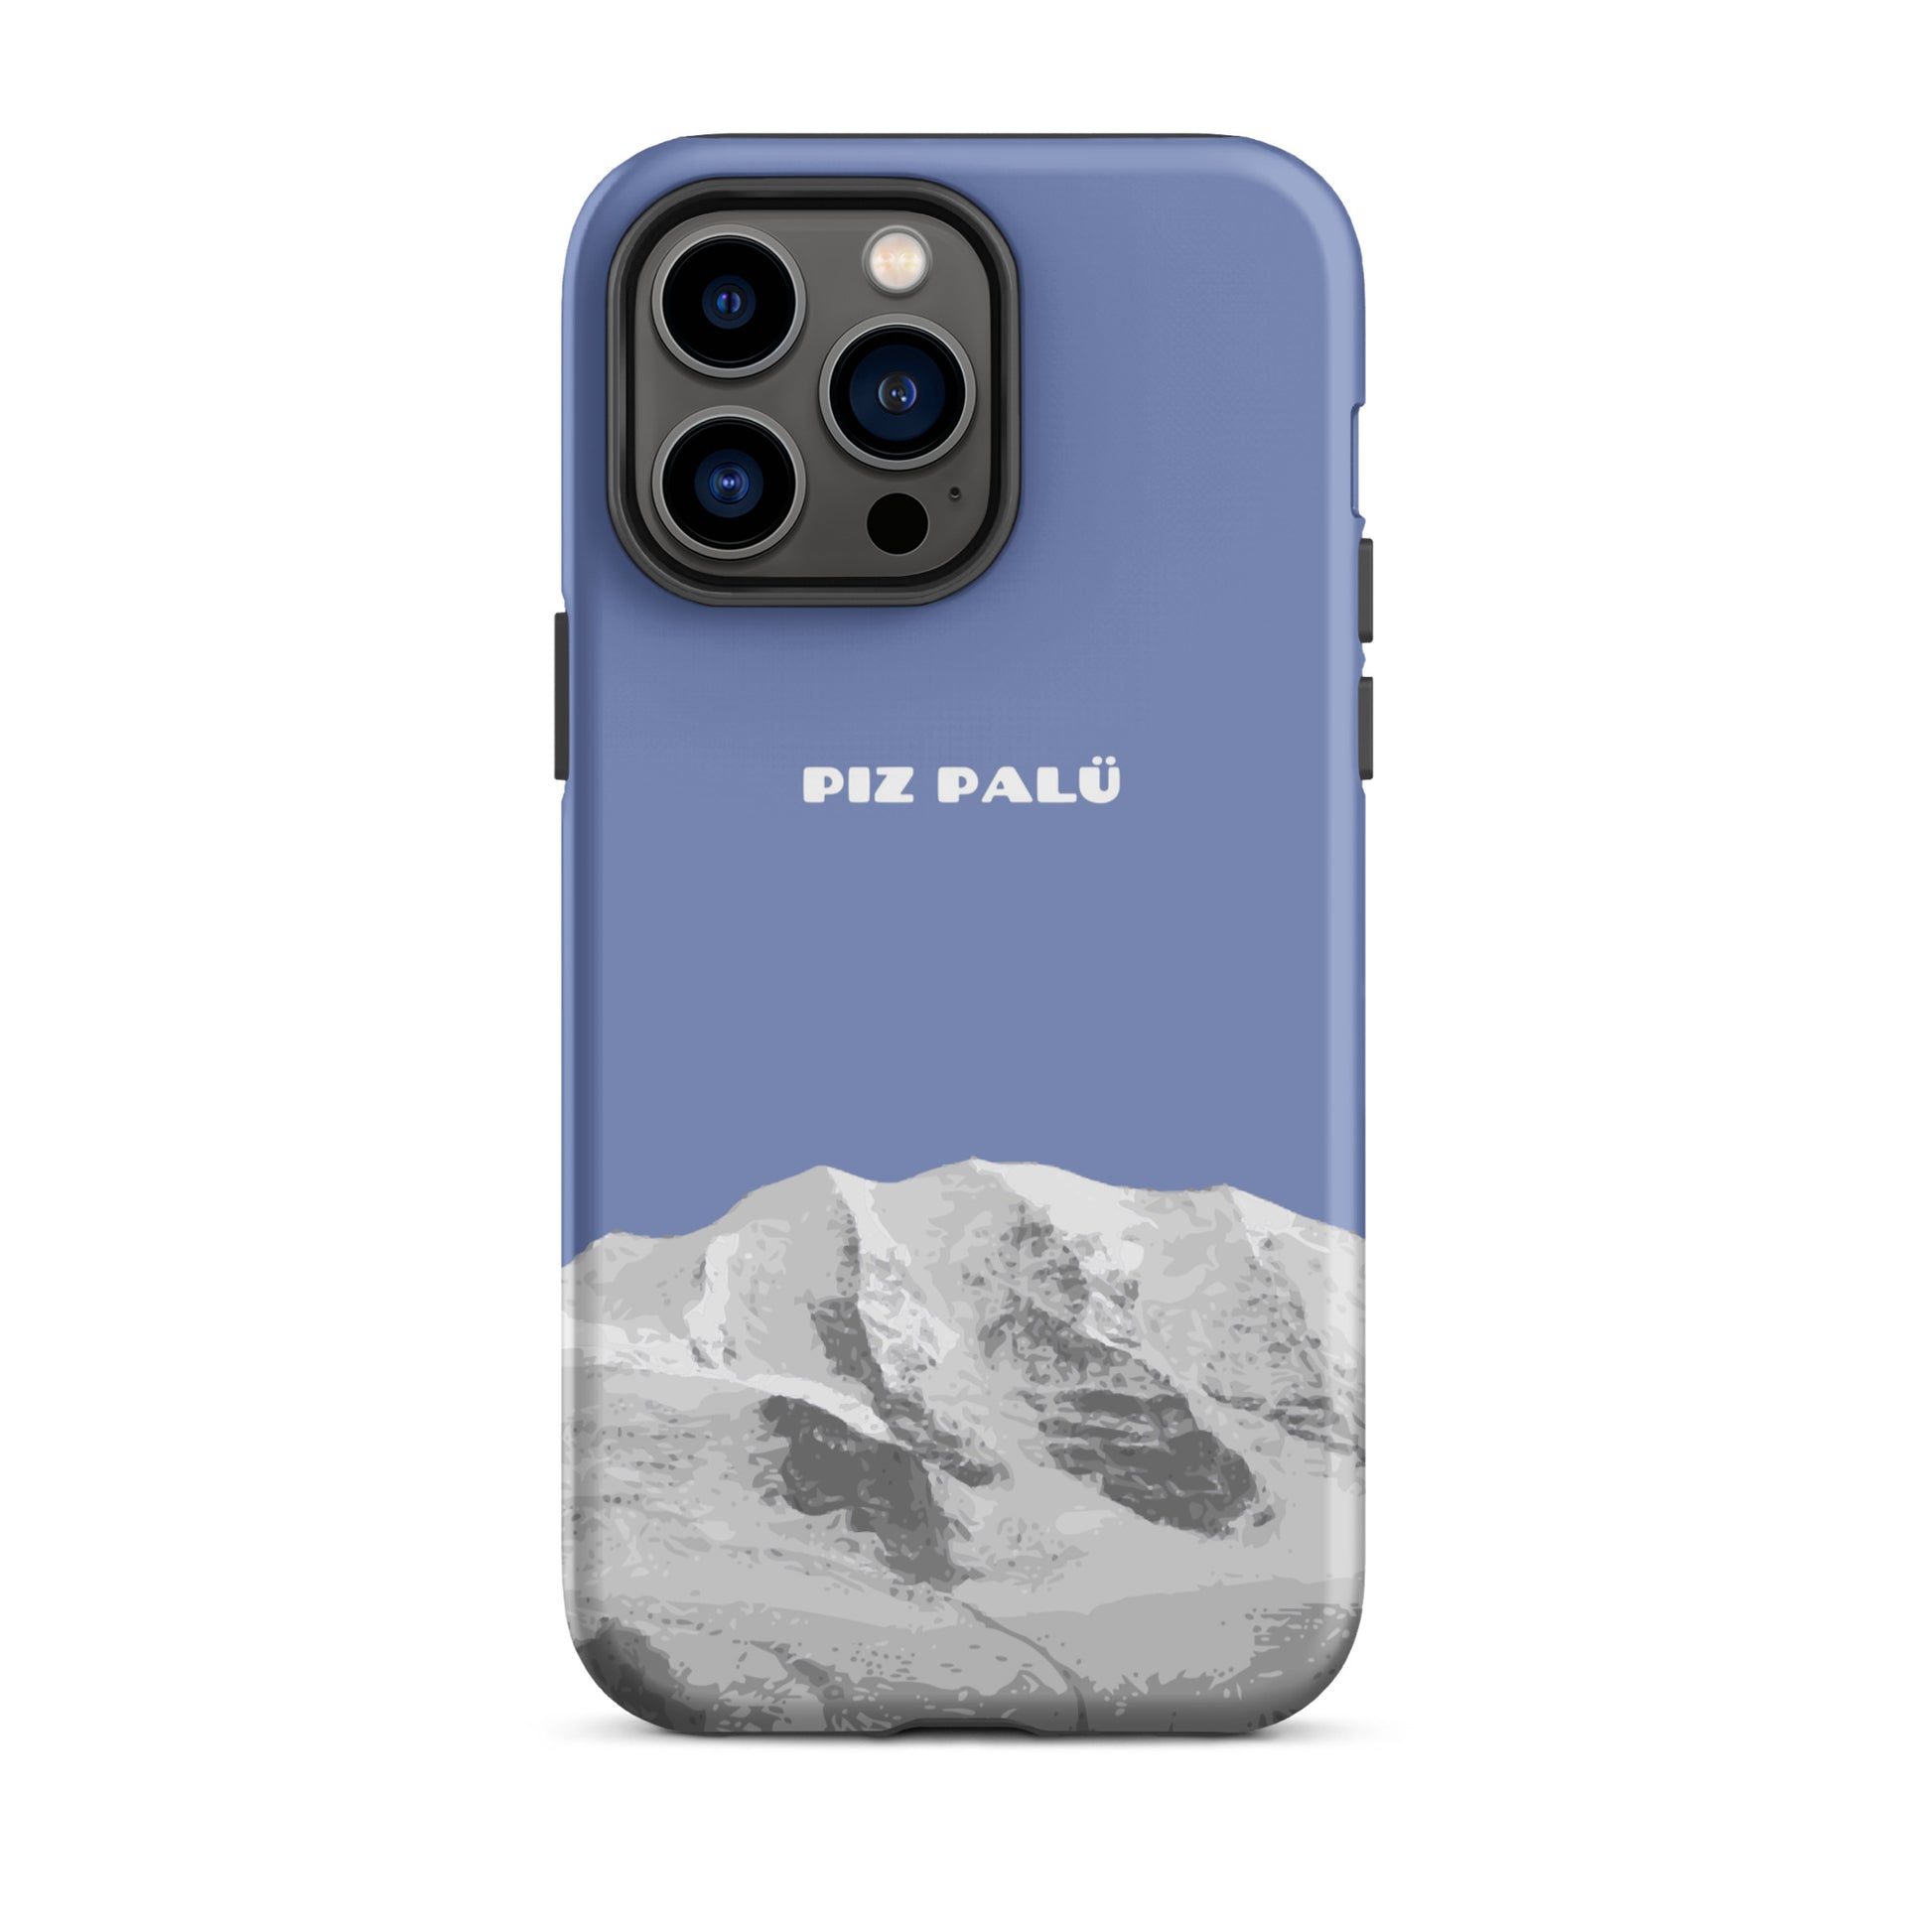 Hülle für das iPhone 14 Pro Max von Apple in der Farbe Pastellblau, dass den Piz Palü in Graubünden zeigt.